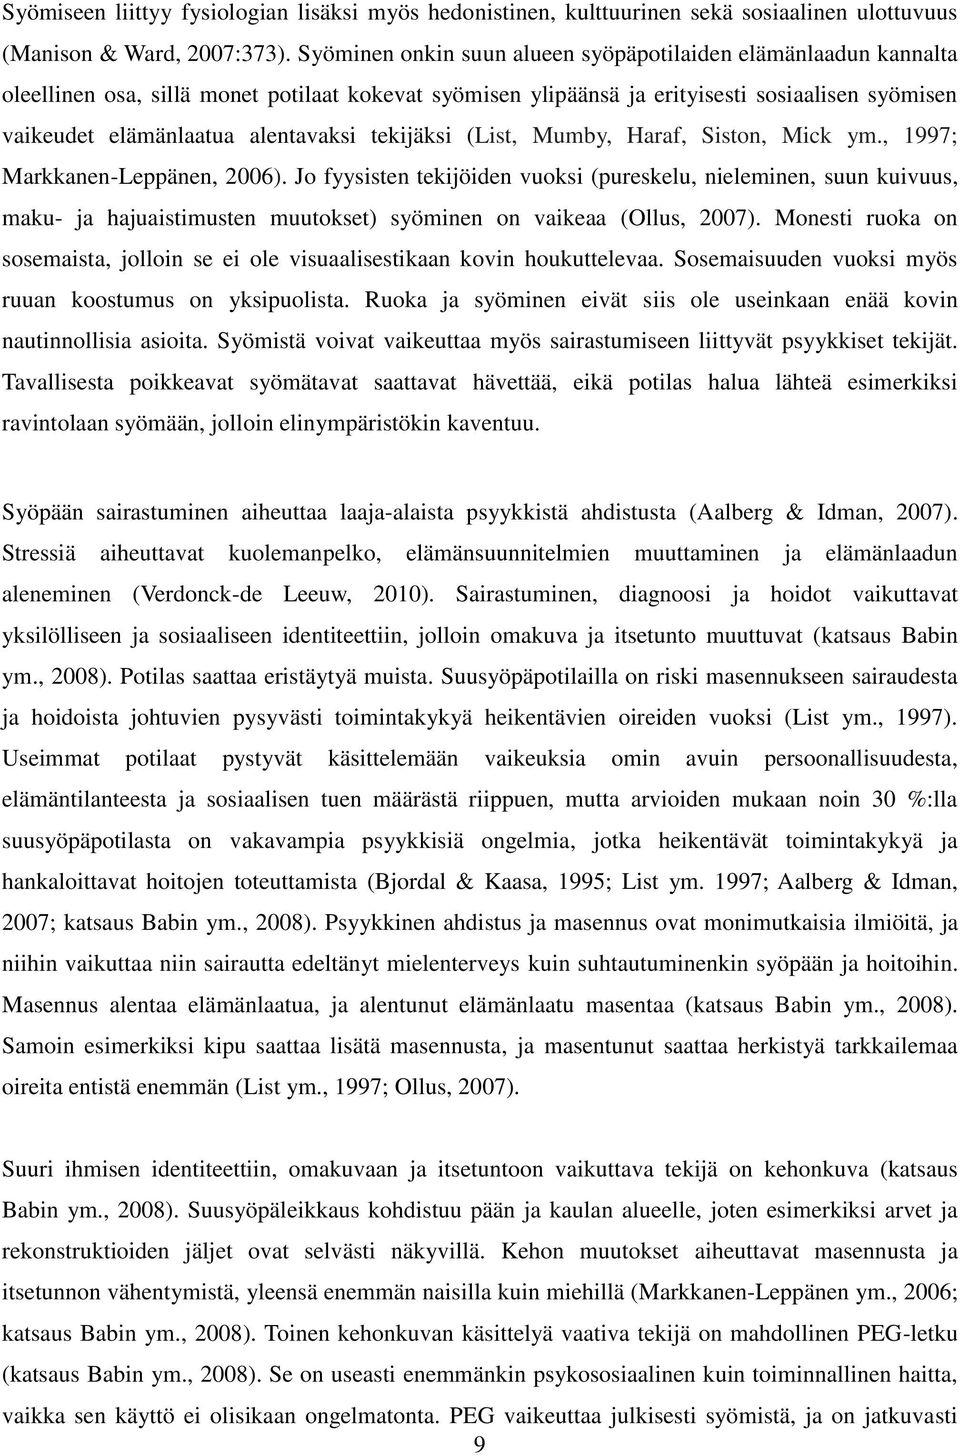 tekijäksi (List, Mumby, Haraf, Siston, Mick ym., 1997; Markkanen-Leppänen, 2006).